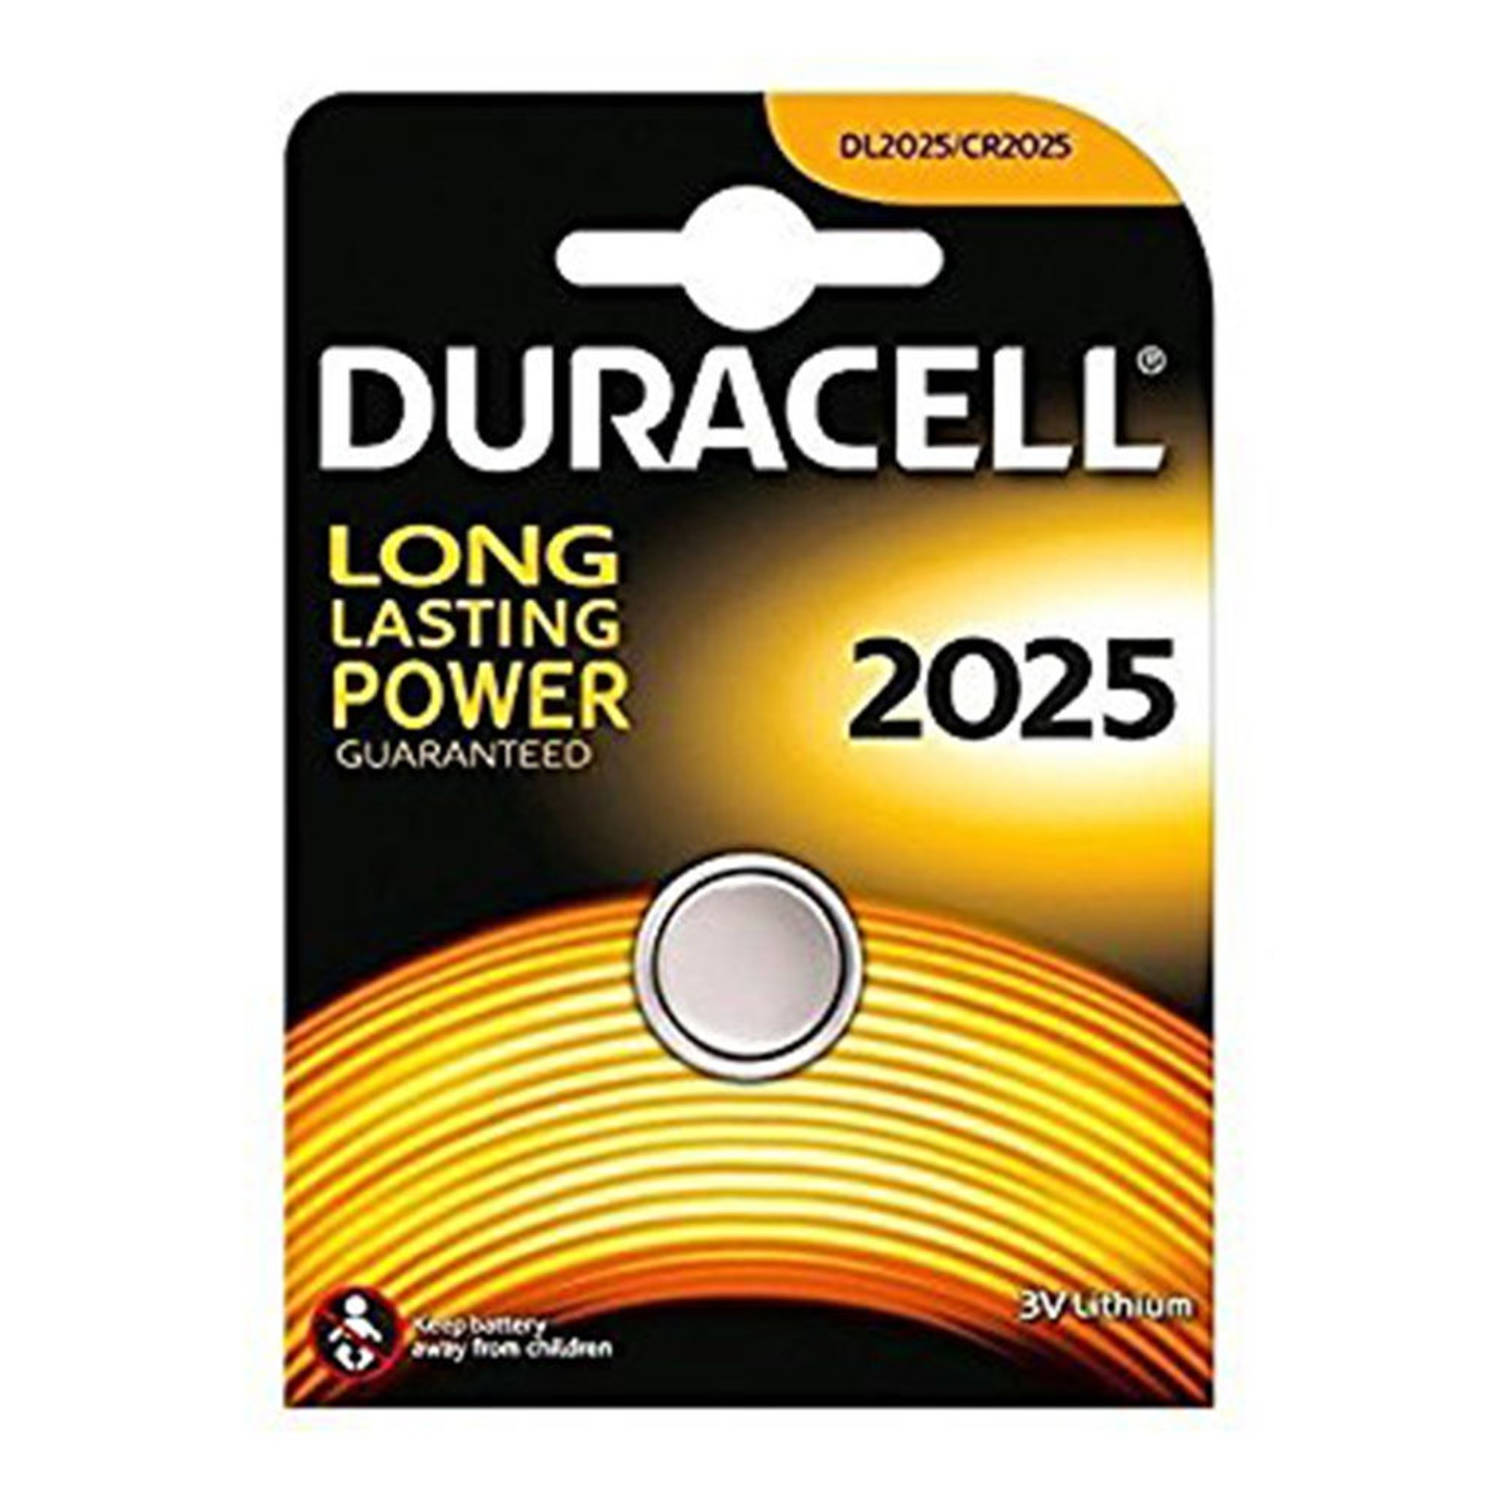 Duracell batterij DL2025 3V Lithium zilver 1 stuks